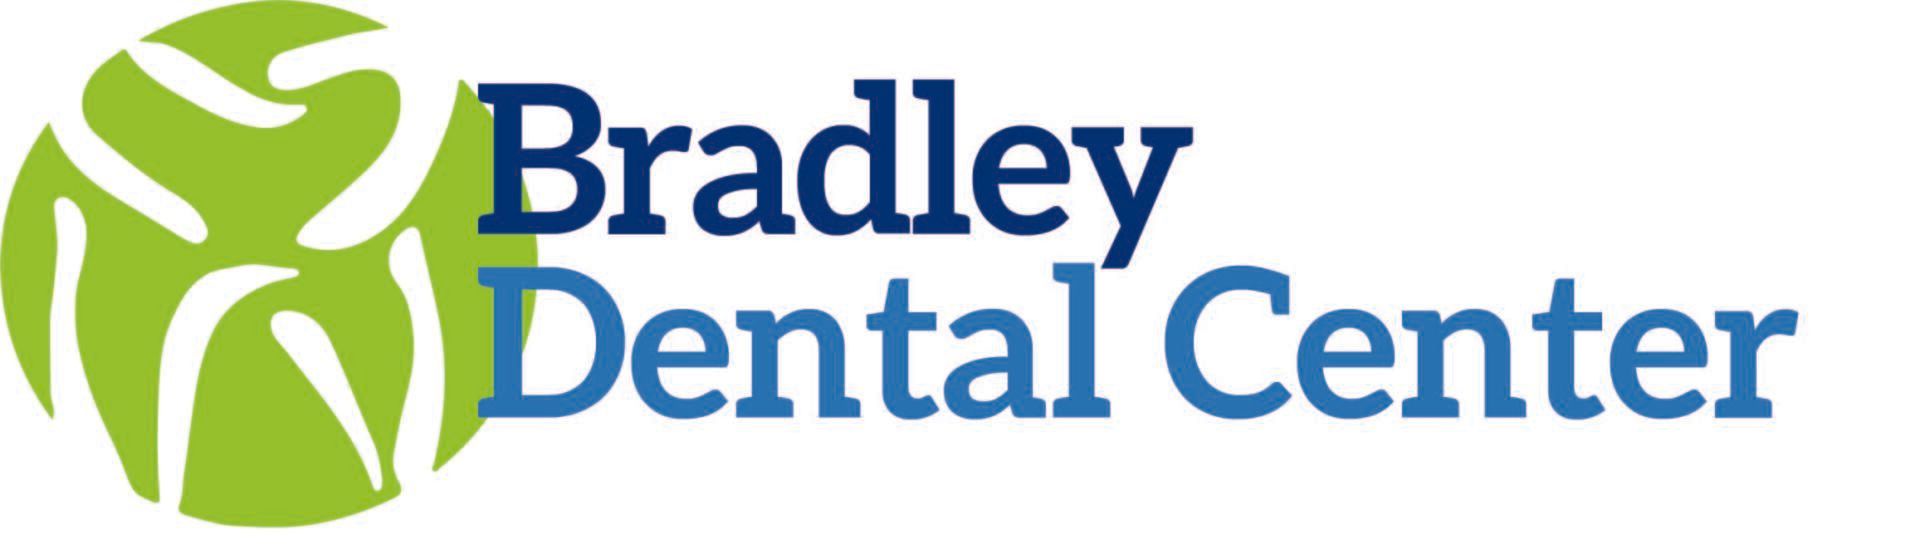 Bradley Dental Center Logo